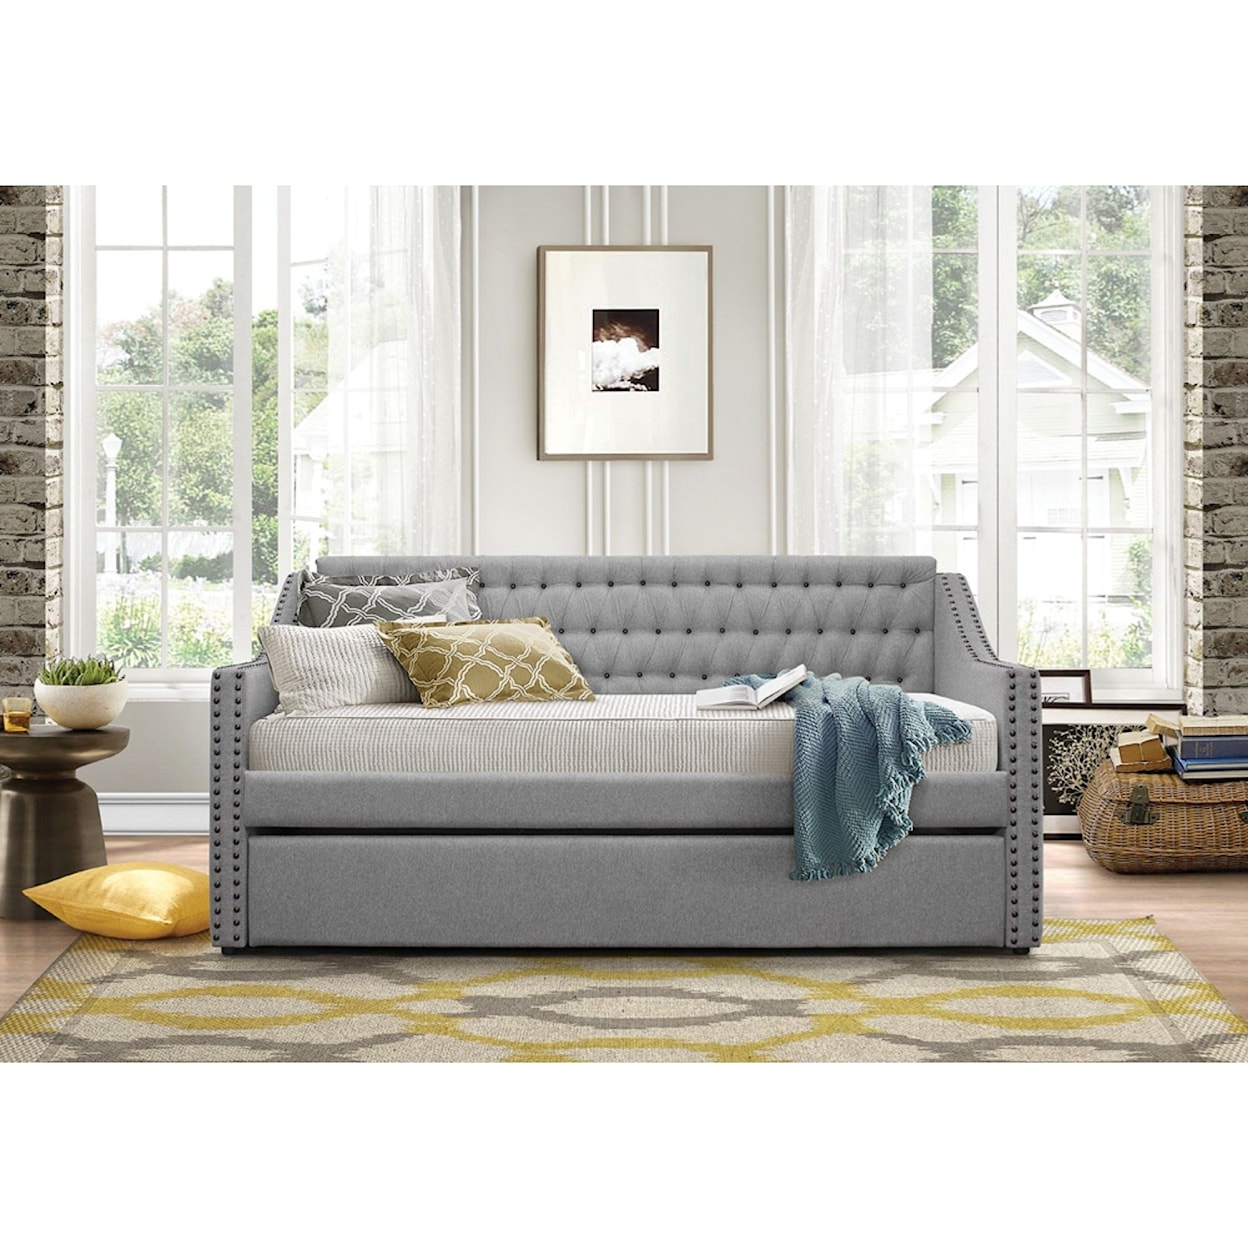 Homelegance Furniture Daybeds Tulney Upholstered Daybed w/ Trundle